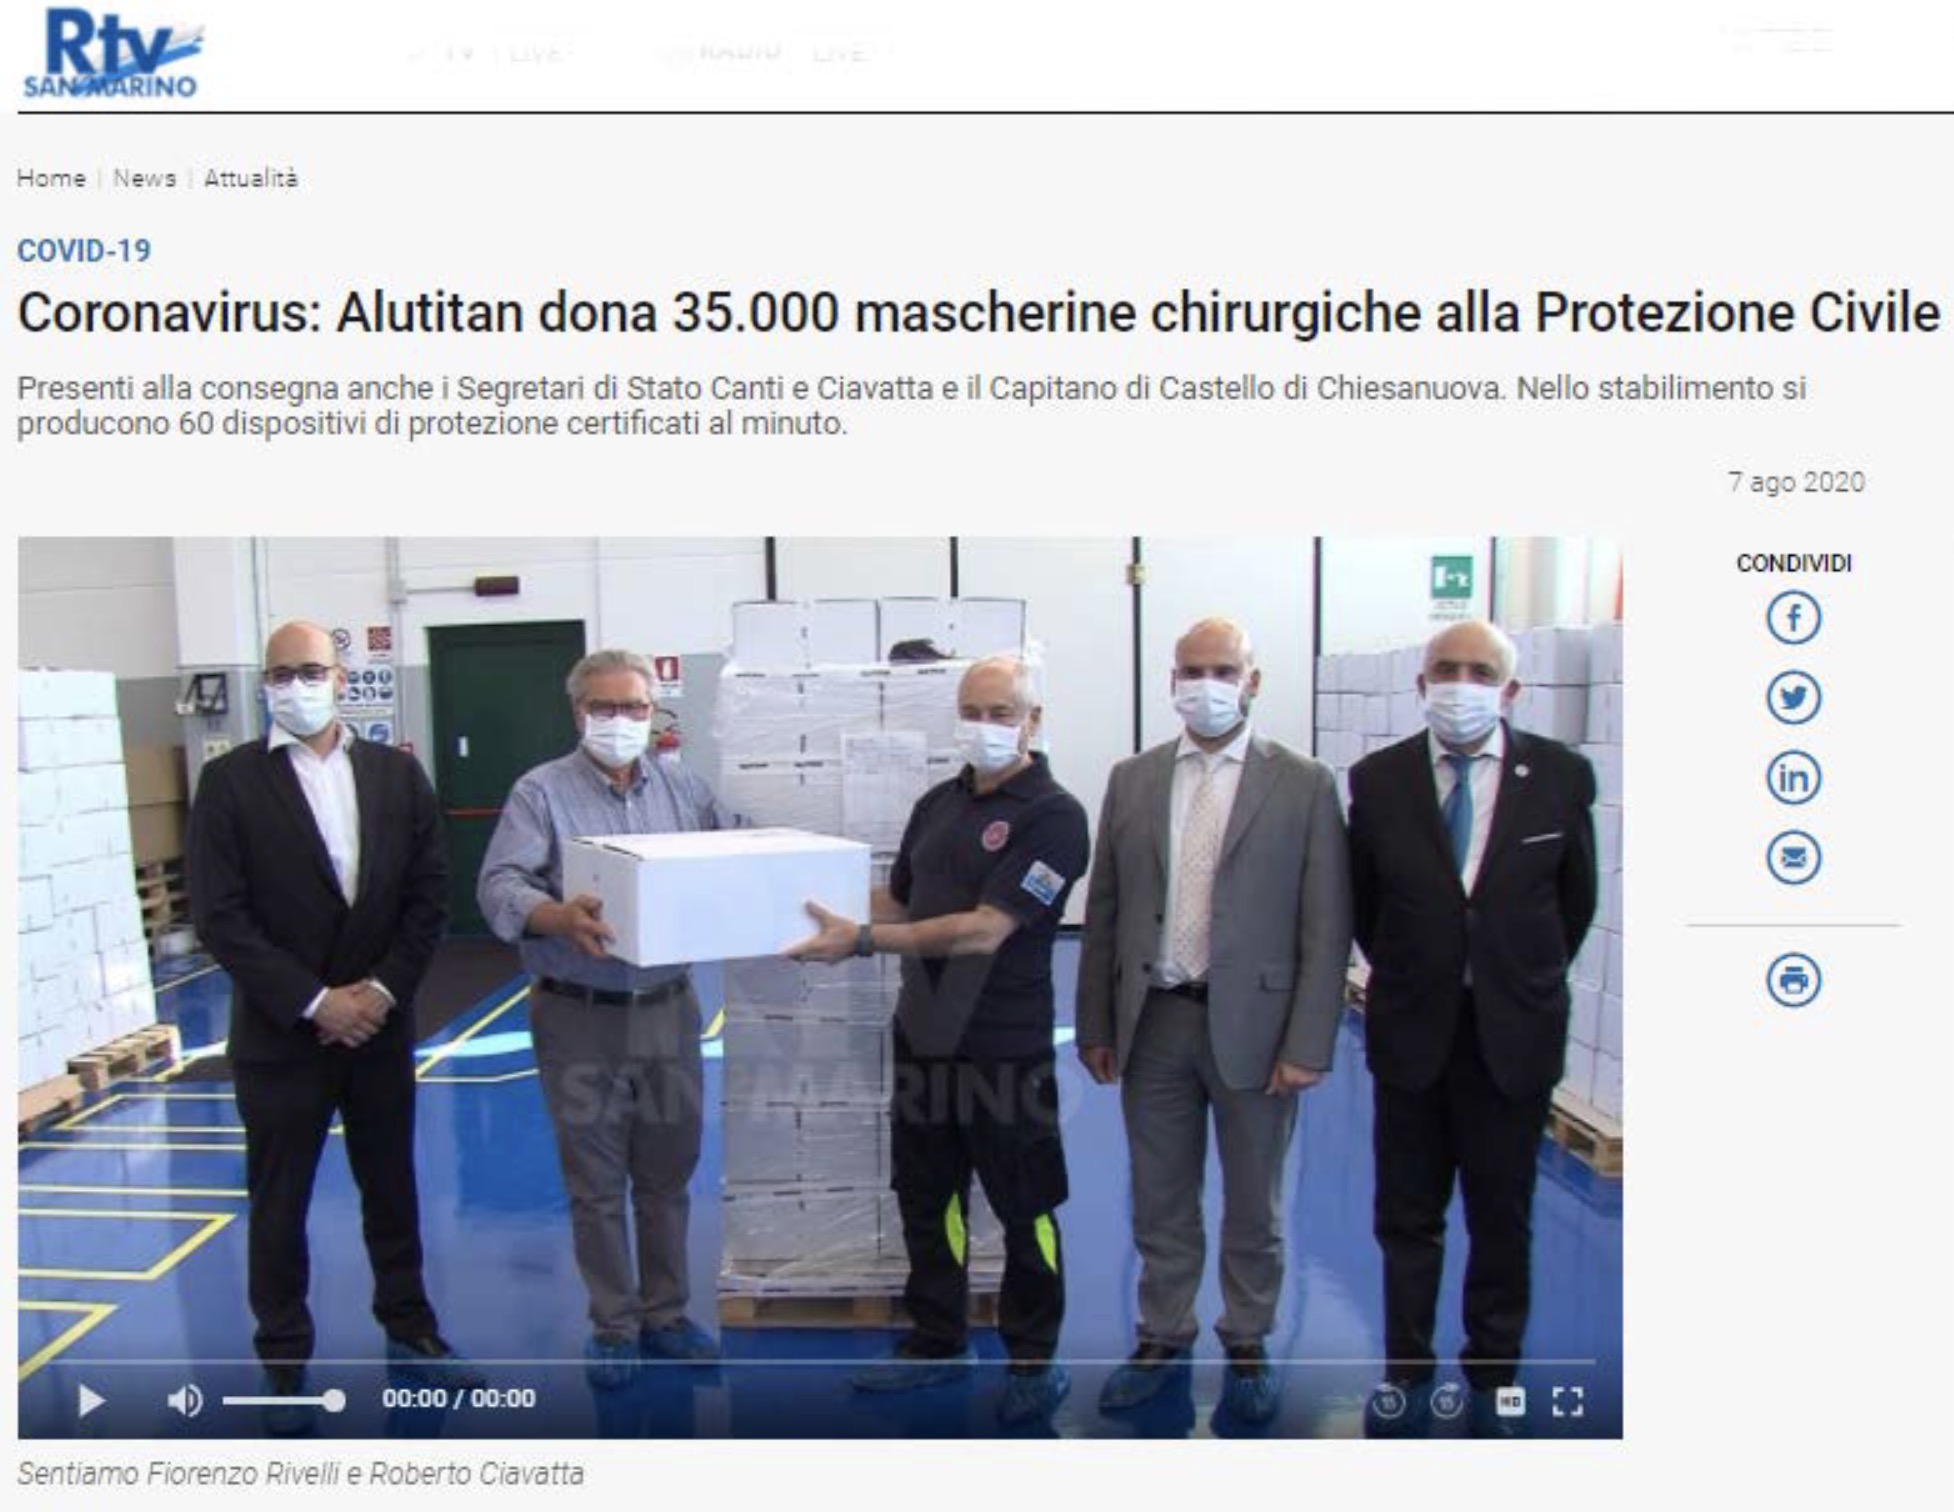 Foto Alutitan dona 35.000 mascherine alla Protezione Civile